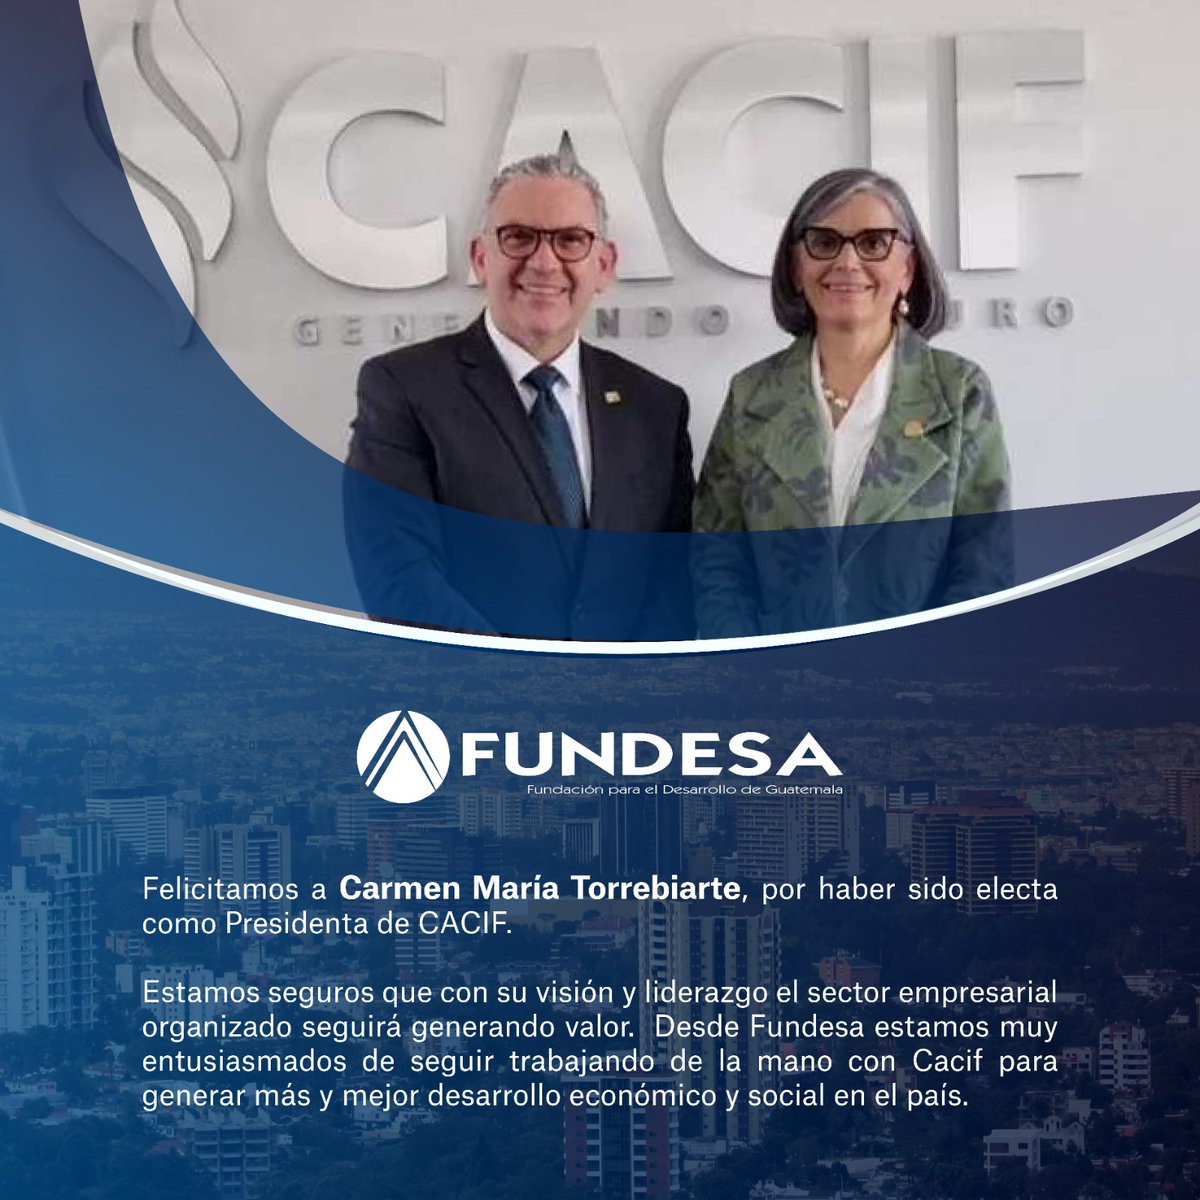 Felicitamos a Carmen María Torrebiarte por haber sido electa como Presidente de @CACIFGuatemala. Estamos seguros que con su visión y liderazgo el sector empresarial organizado seguirá generando valor. Desde FUNDESA estamos muy entisiasmados de seguir trabajanod de la mano.